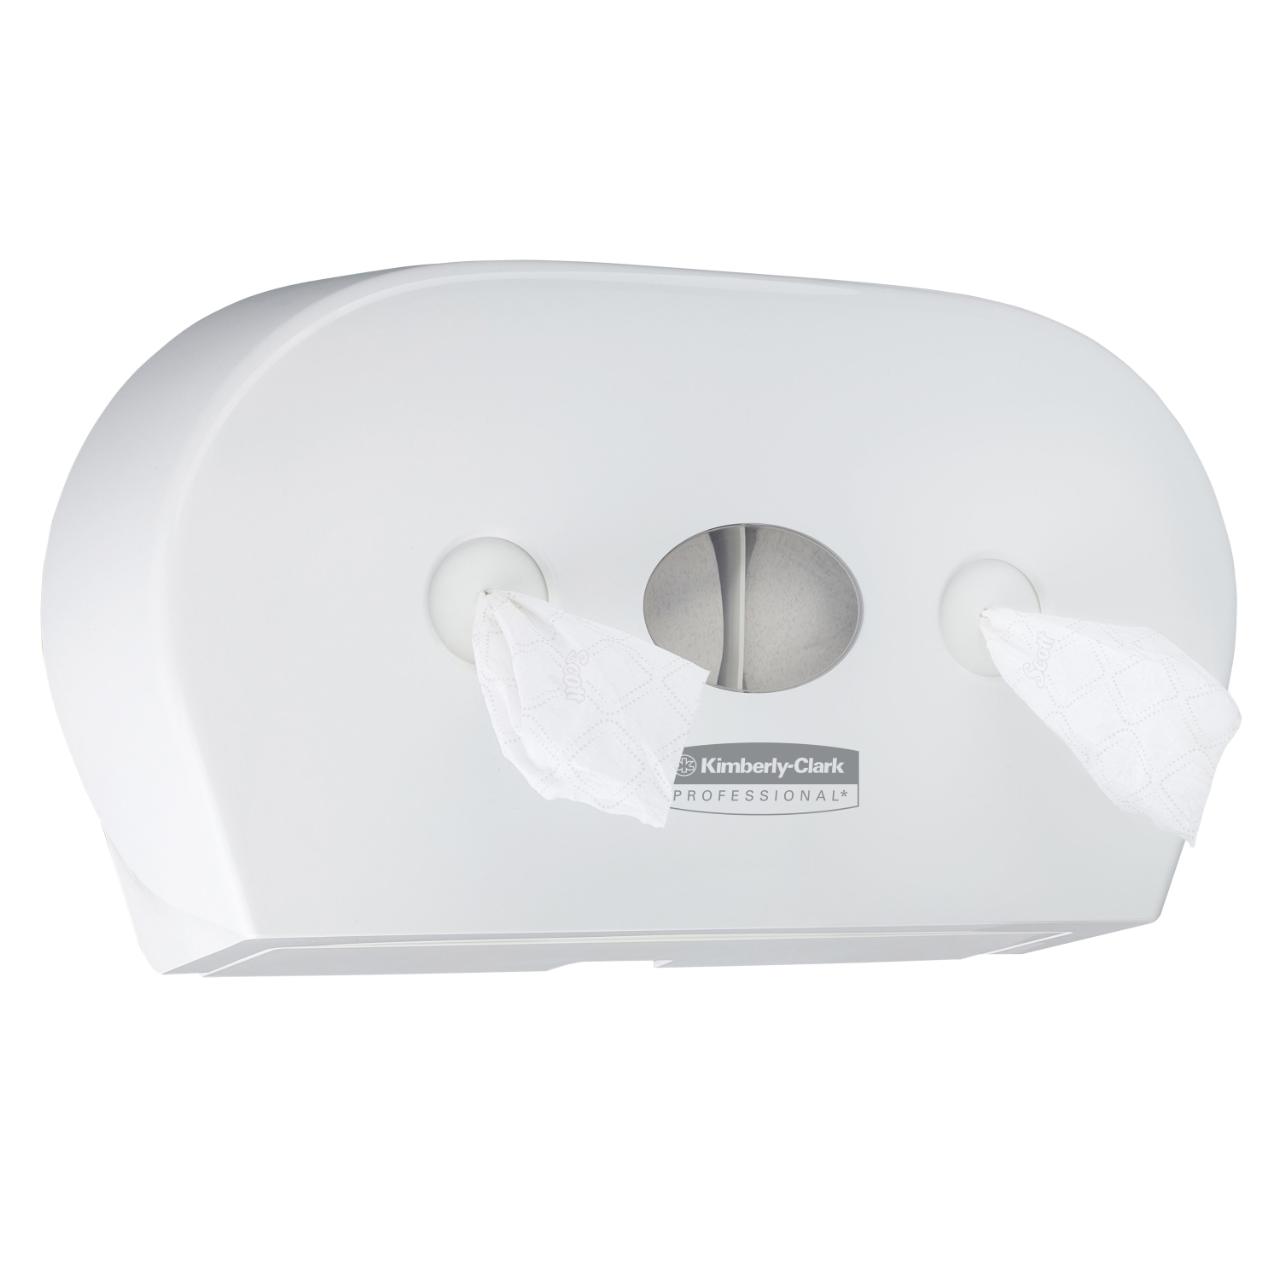 Dispenser Kimberly-Clark Mini Twin, pentru hartie igienica cu derulare centrala, alb